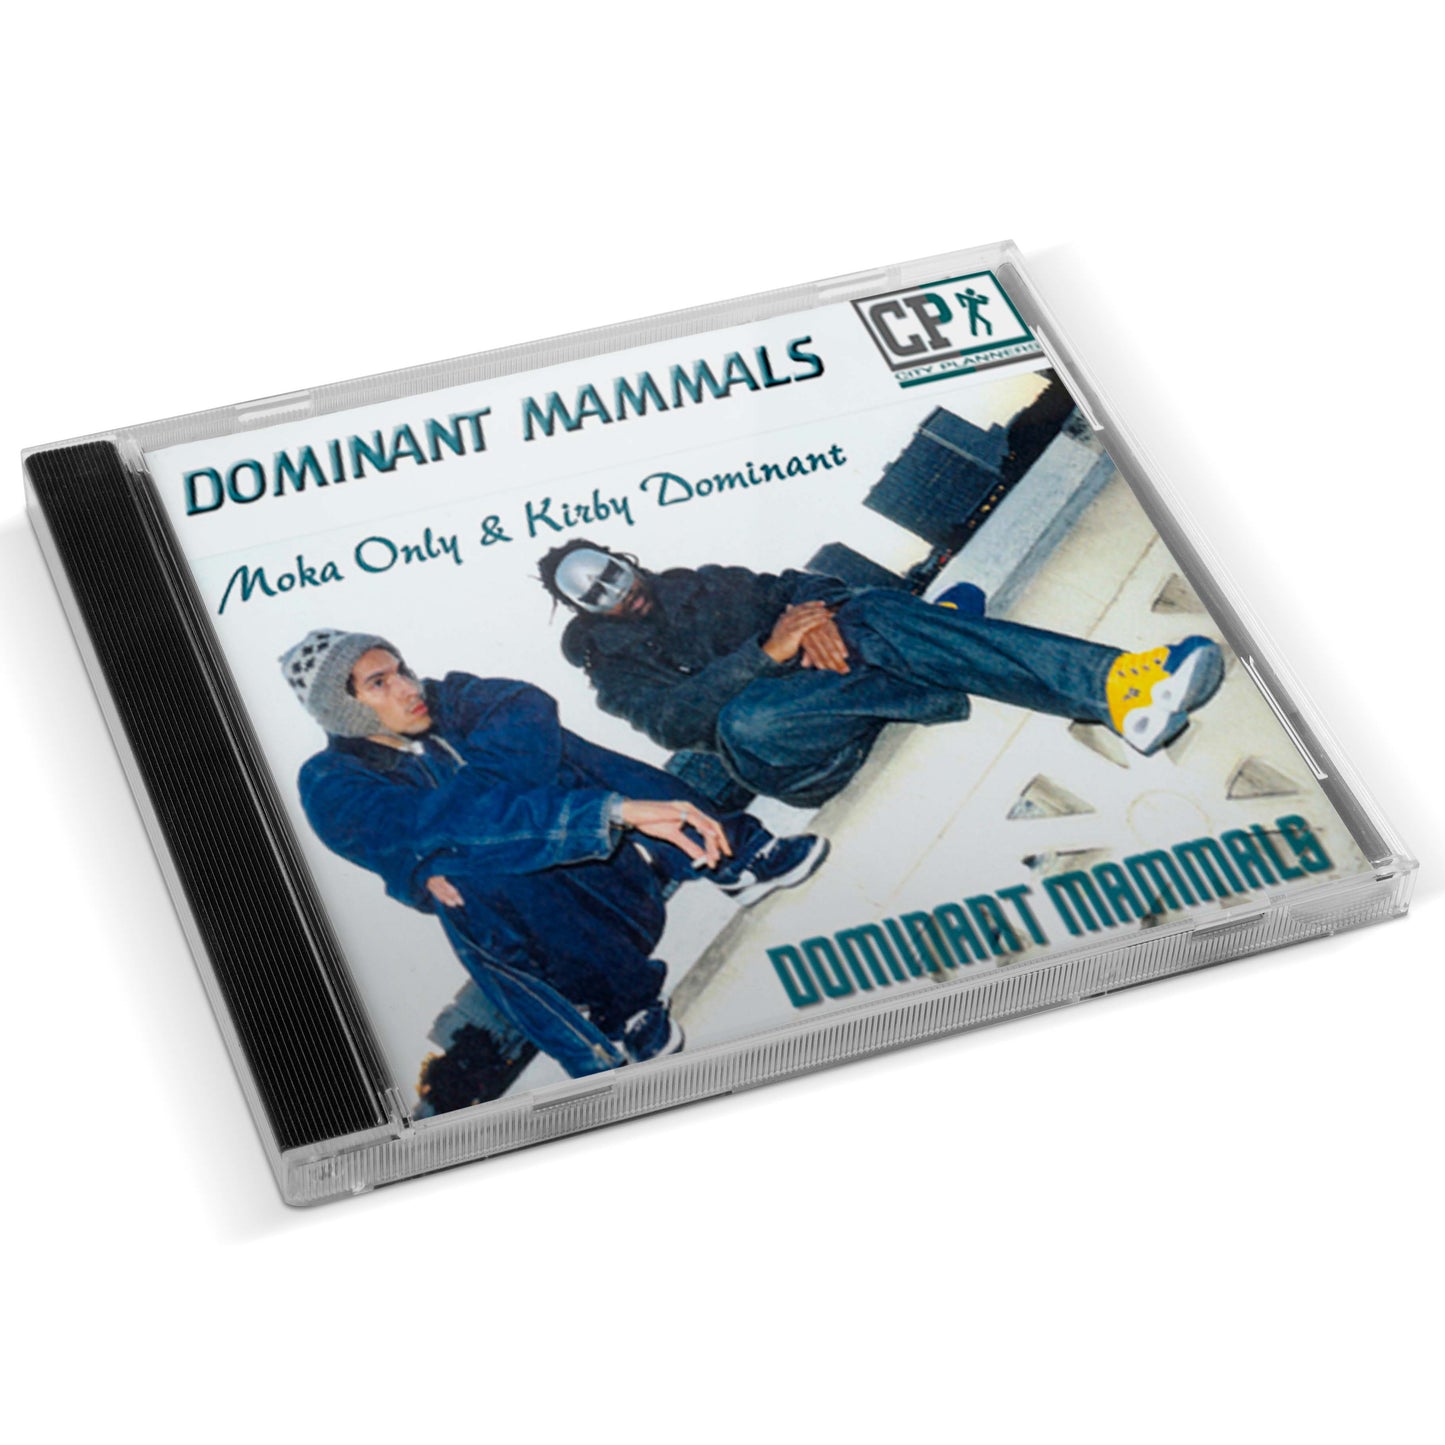 Moka Only & Kirby Dominant - Dominant Mammals CD